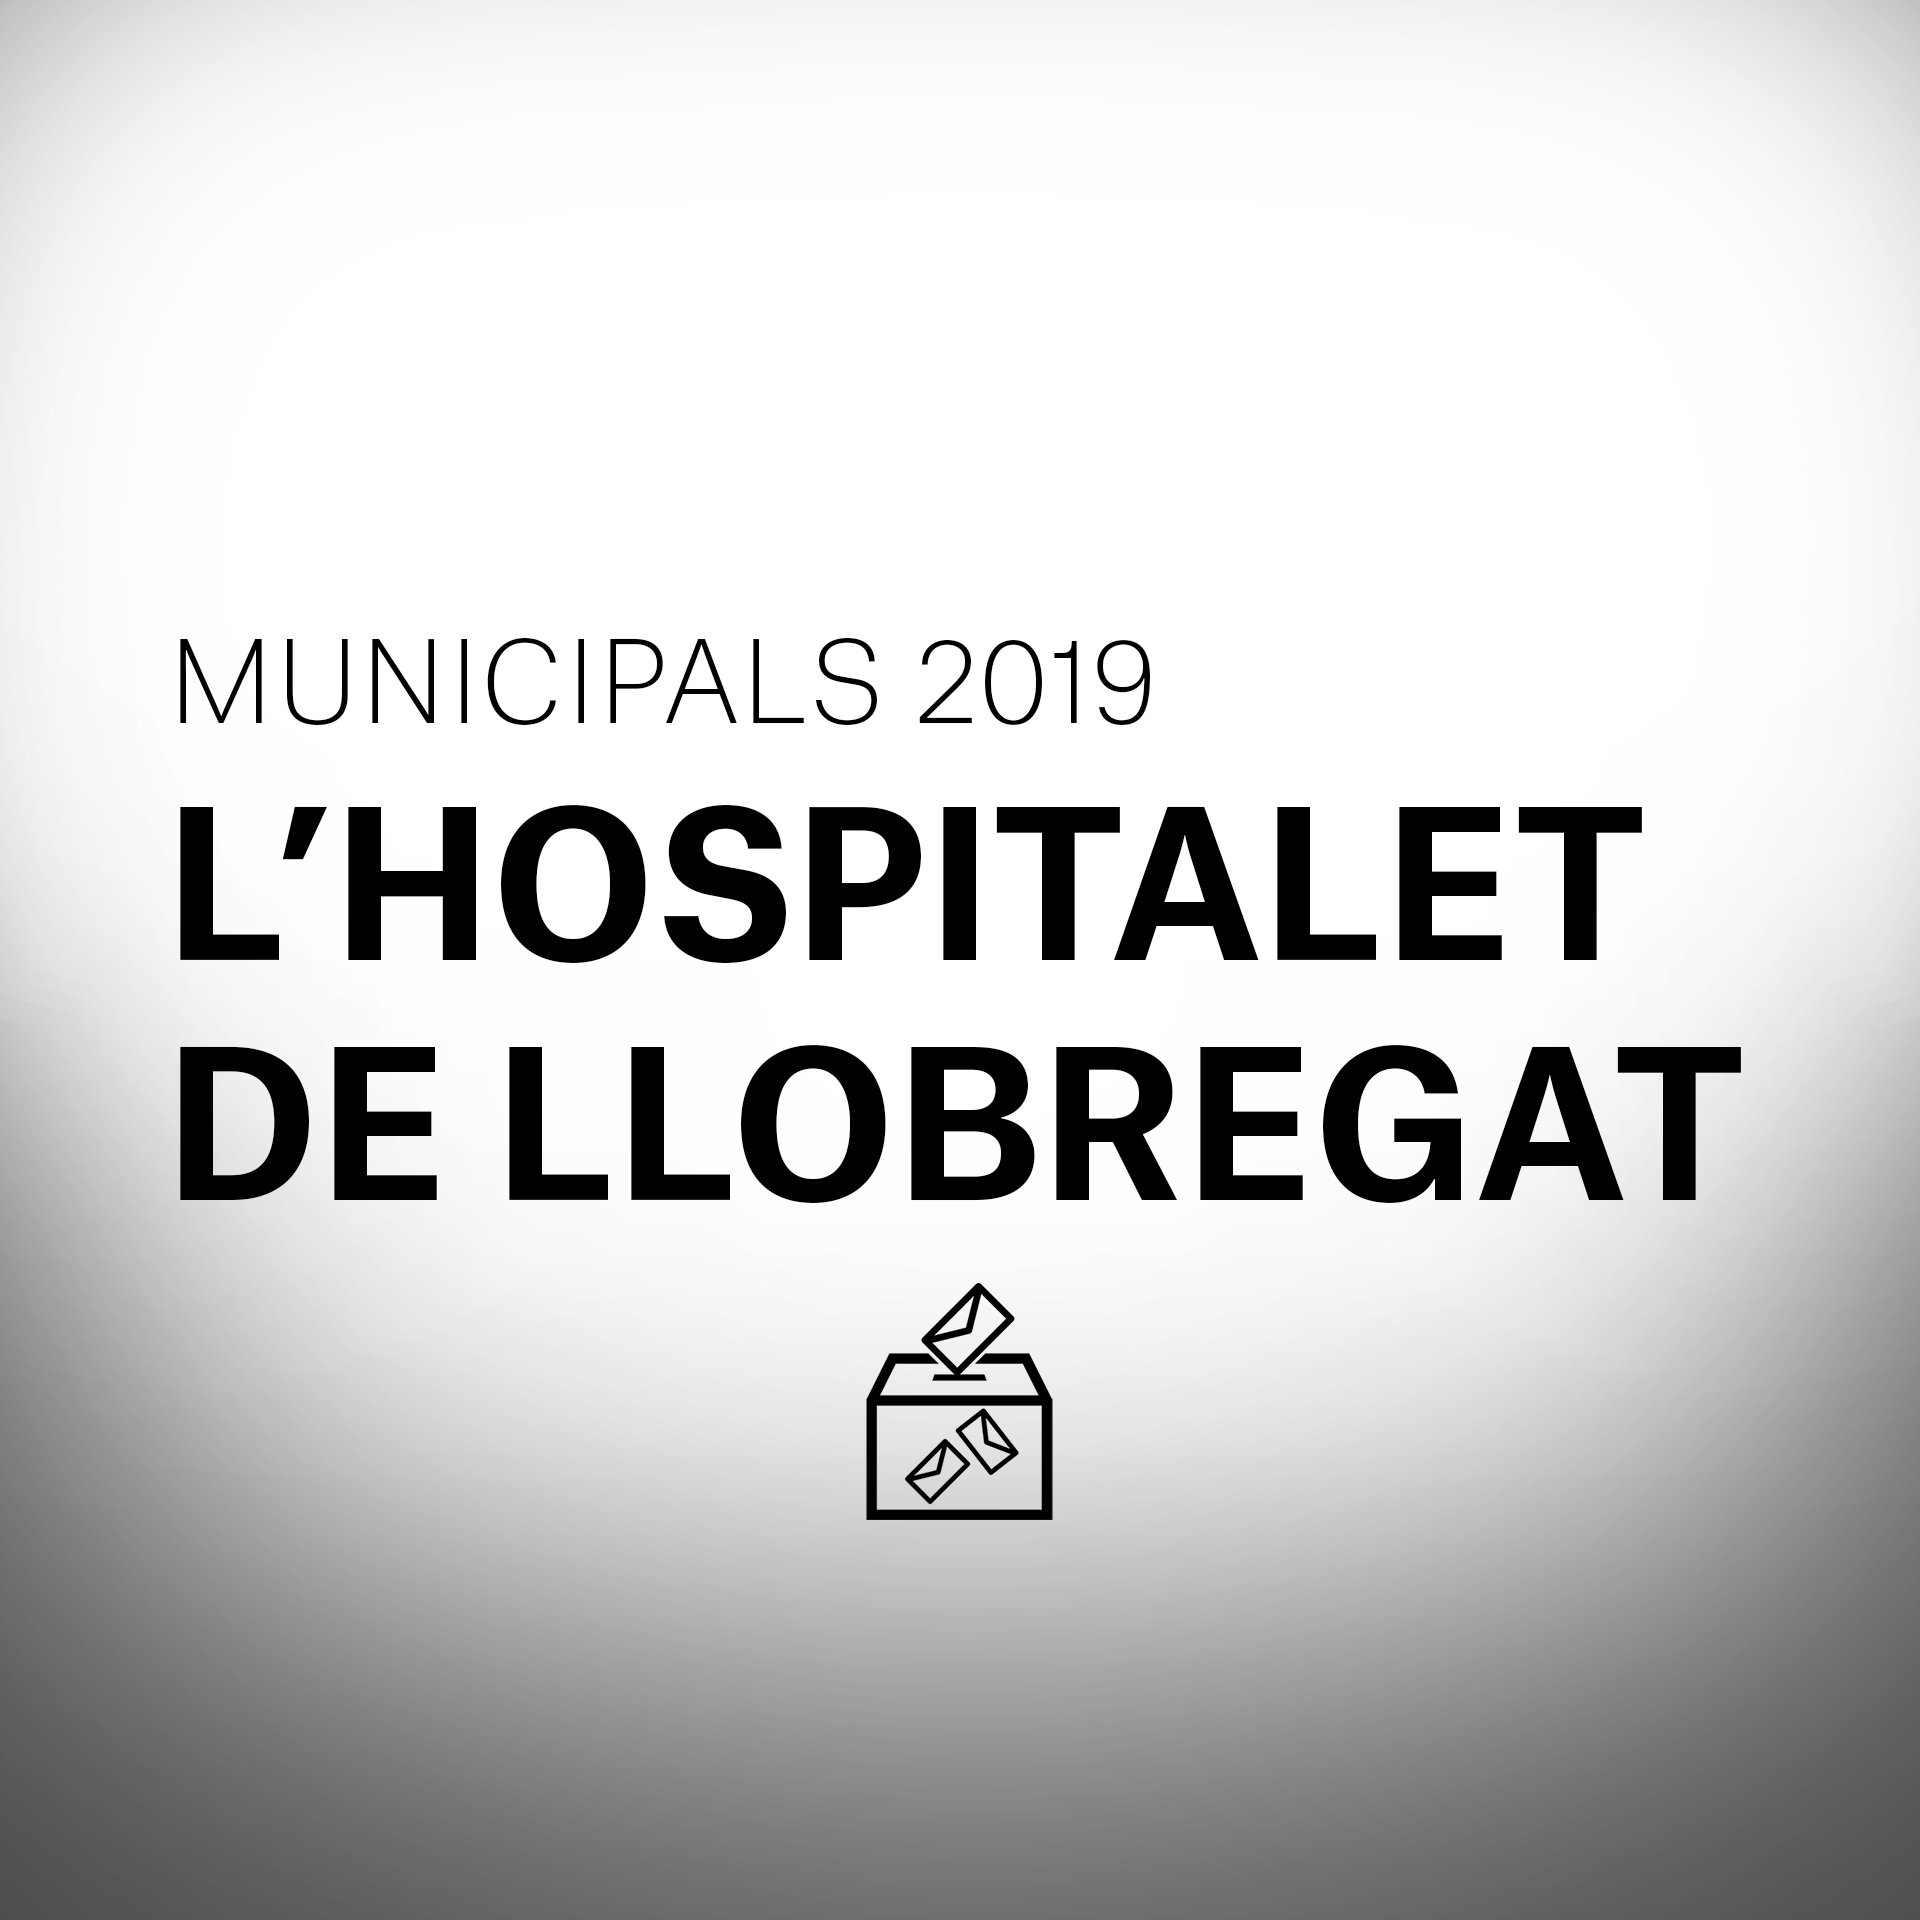 Què passarà a les Eleccions Municipals a l'Hospitalet de Llobregat?